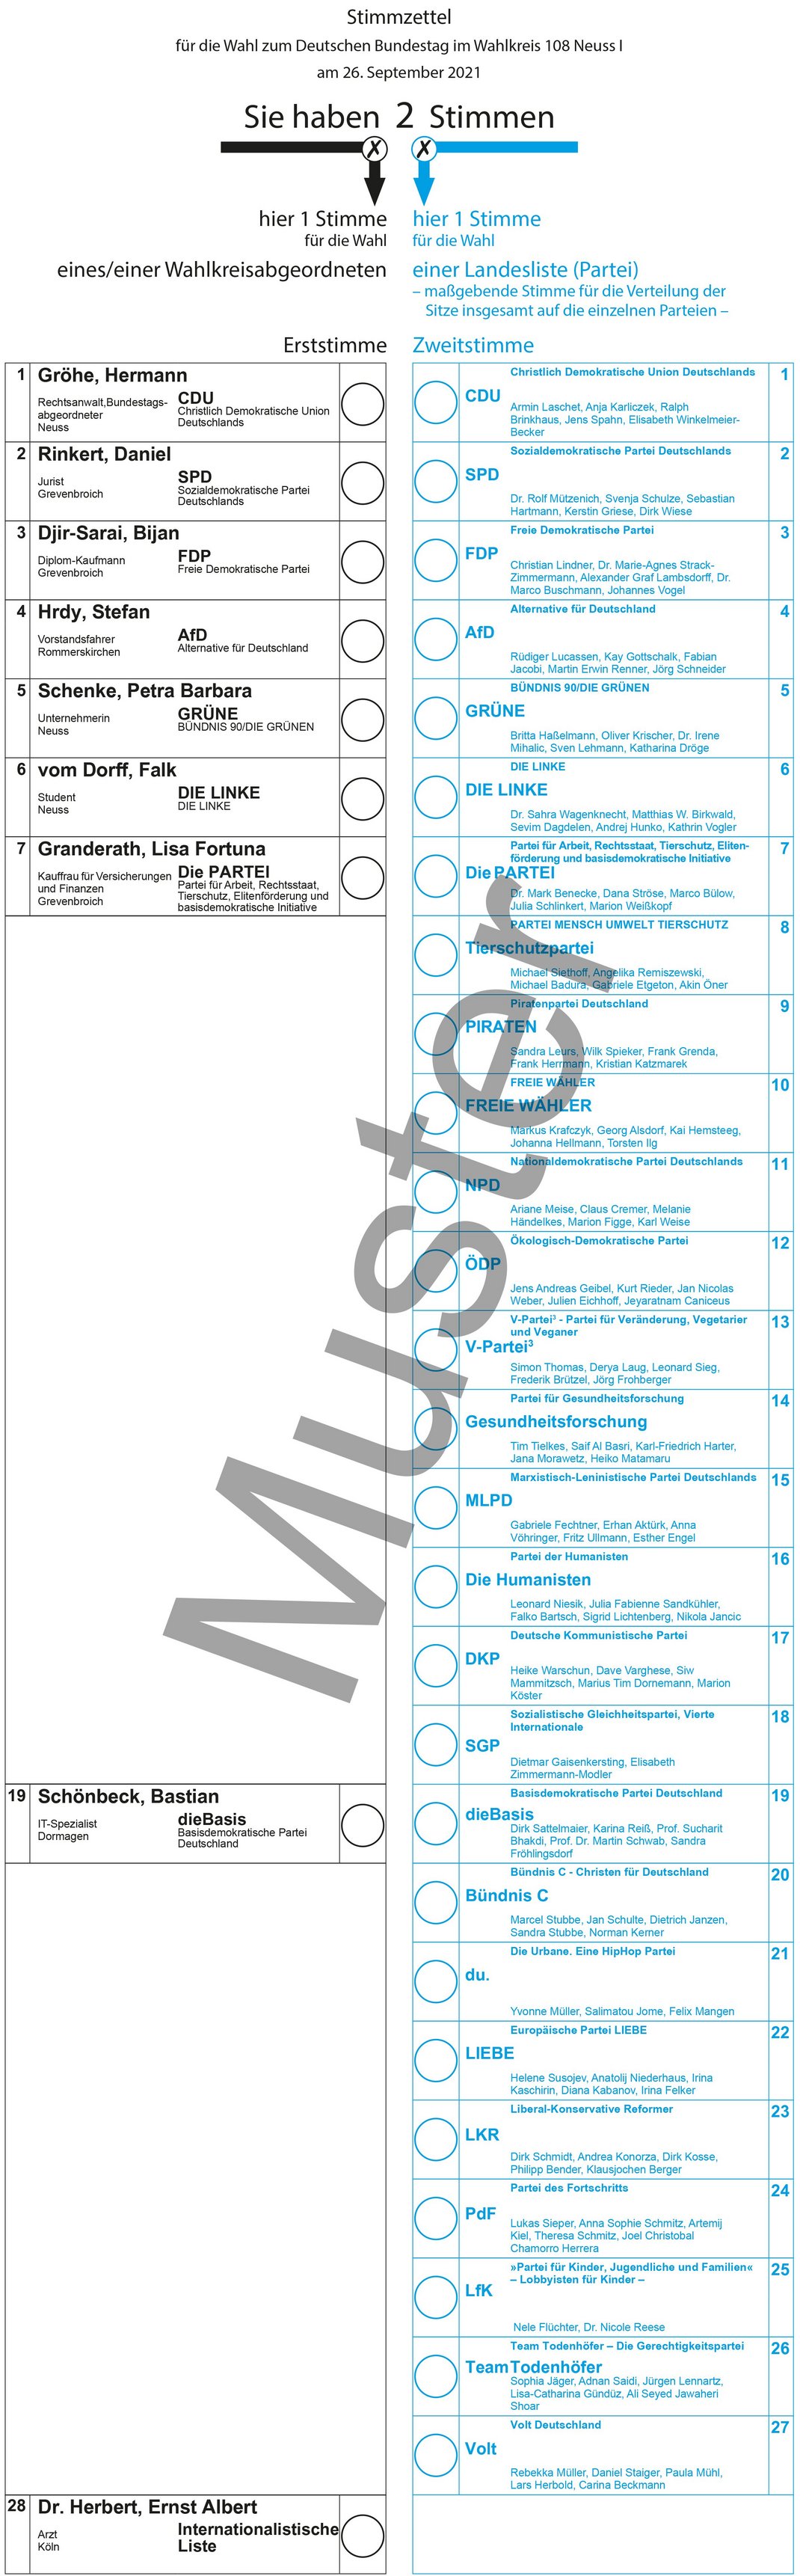 Muster-Stimmzettel zur Bundestagswahl 2021